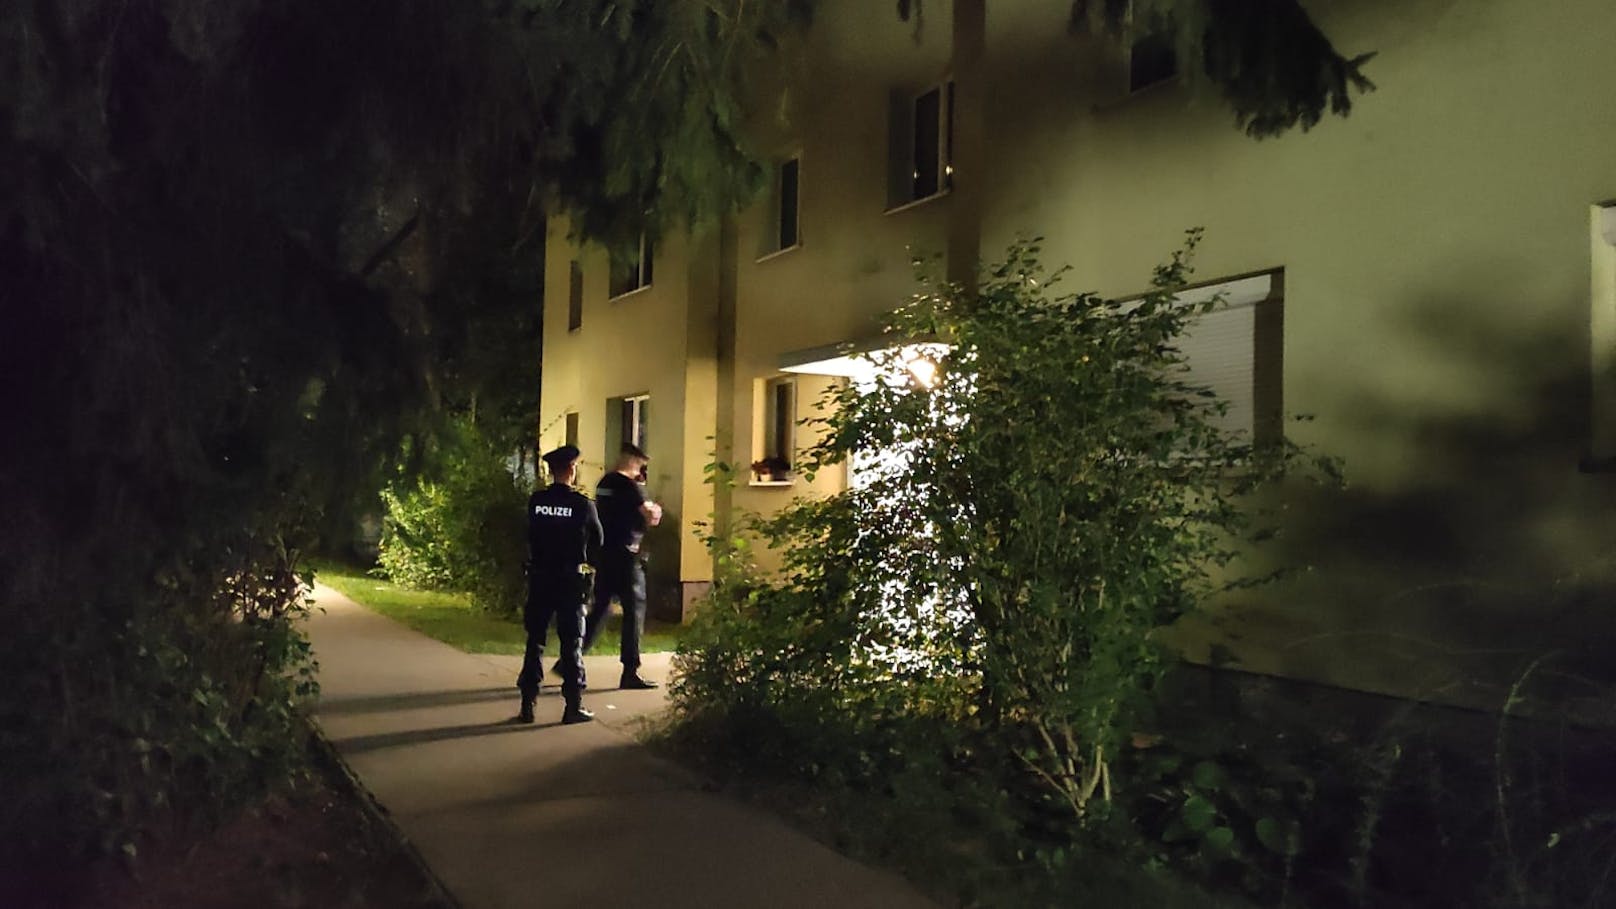 Mord-Alarm in der Pierre-Albin-Hansson-Siedlung in Favoriten: Eine Frau und ein Mann wurden tot aufgefunden. Die Polizei ermittelt.